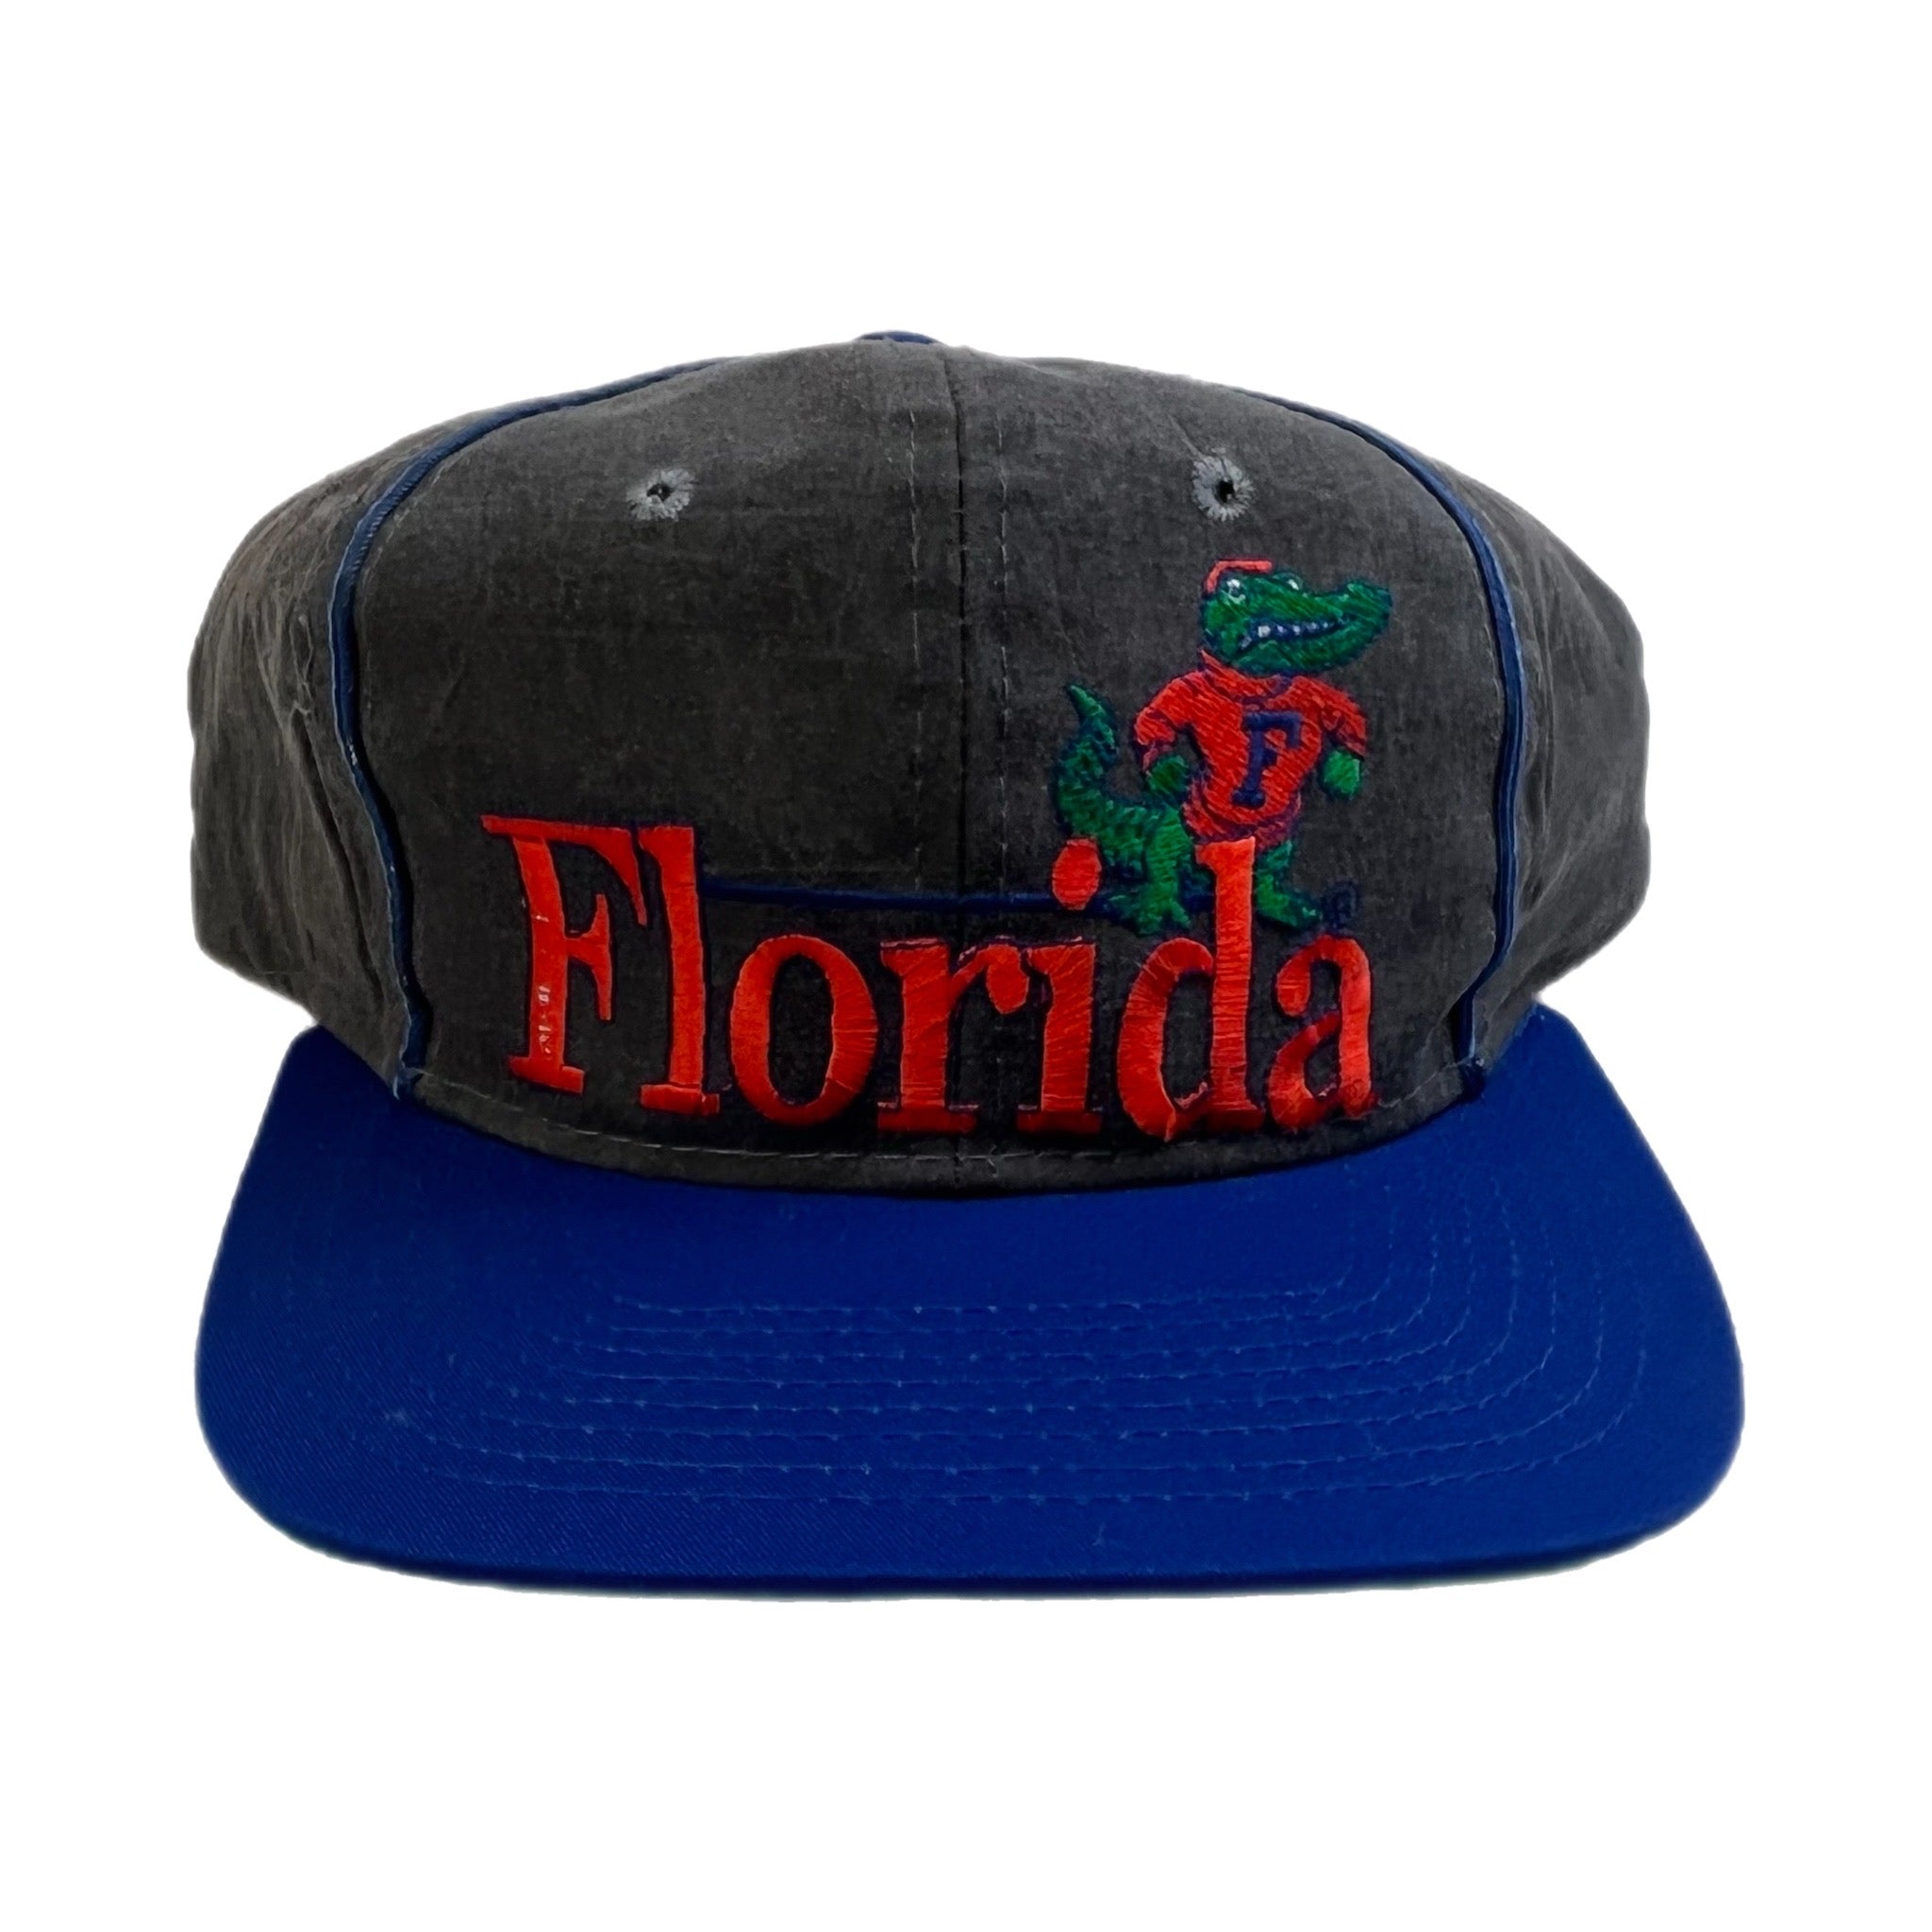 Vintage Florida Gators The Game Hat